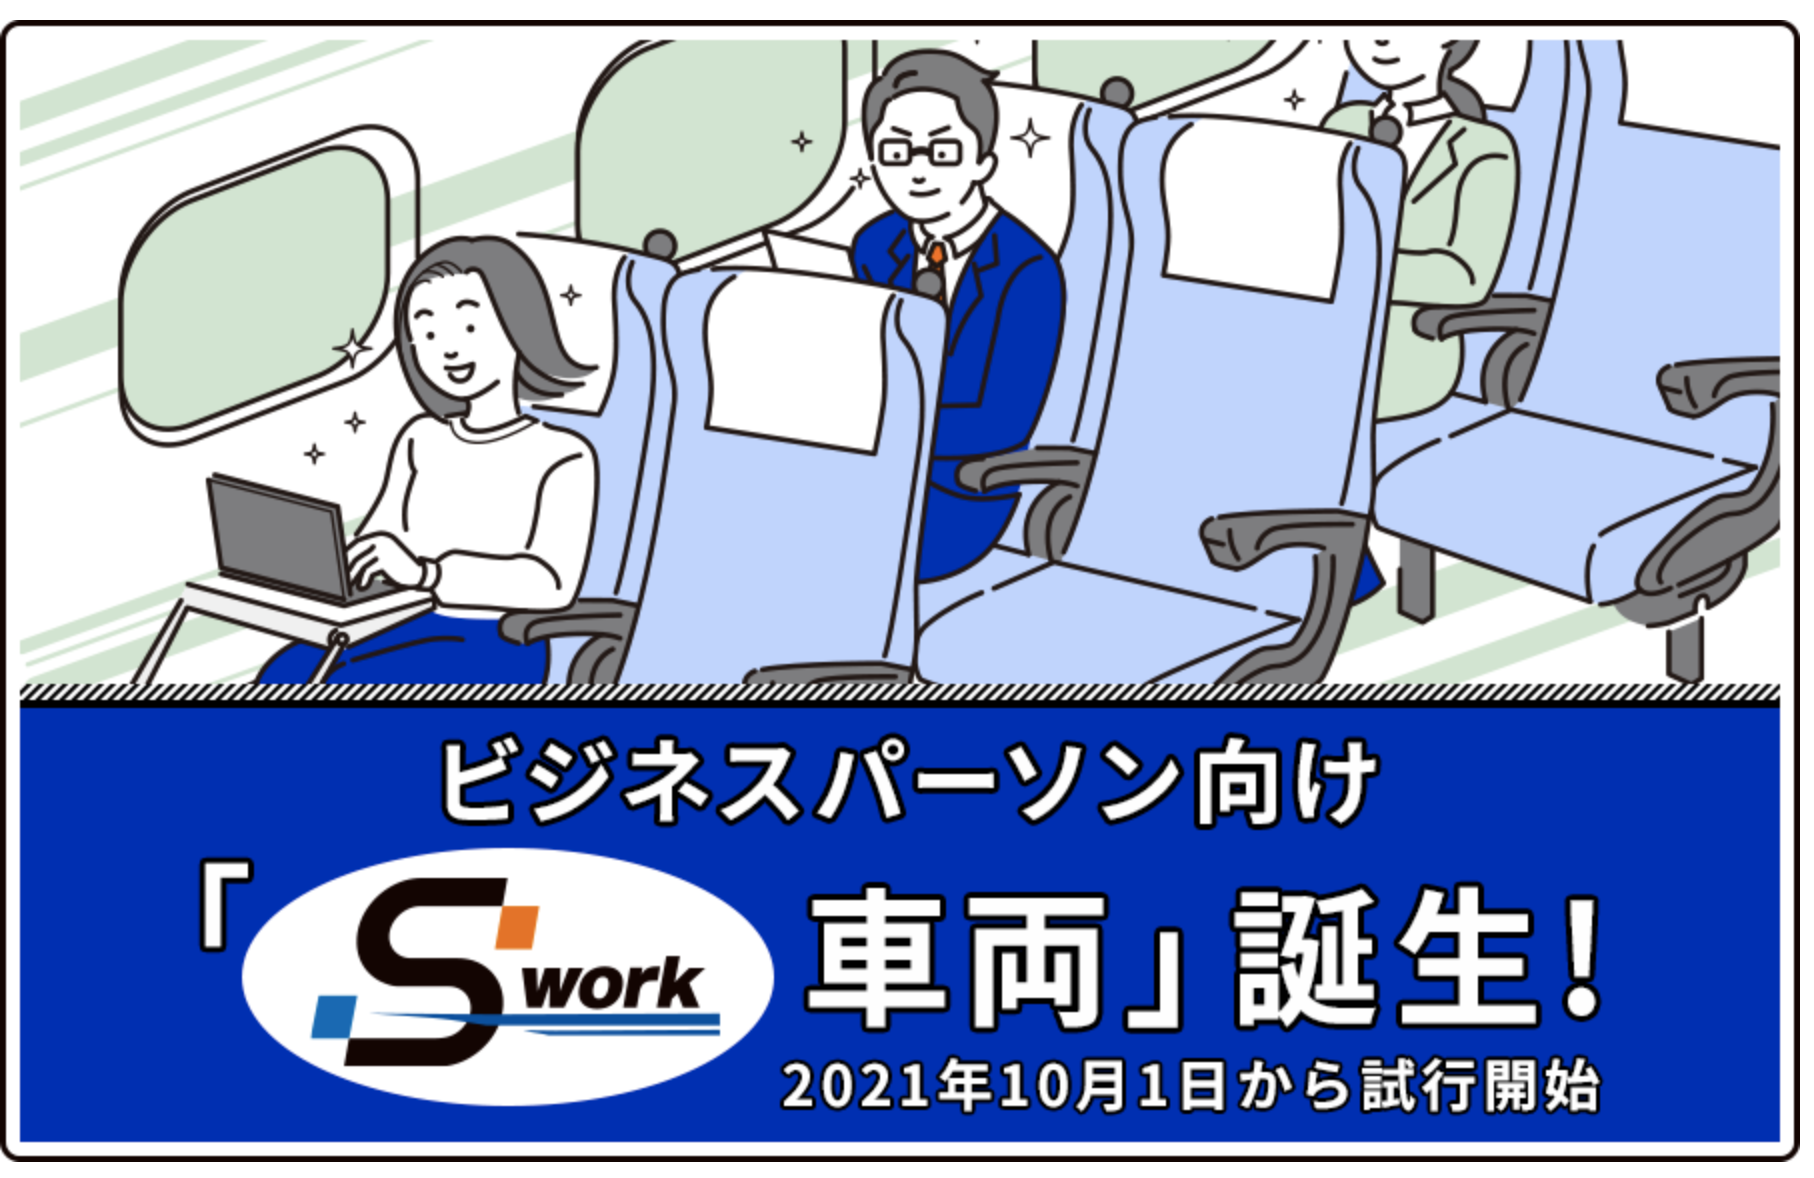 Eine Werbung für den neuen Business-Wagen im Tokaido-Shinkansen.